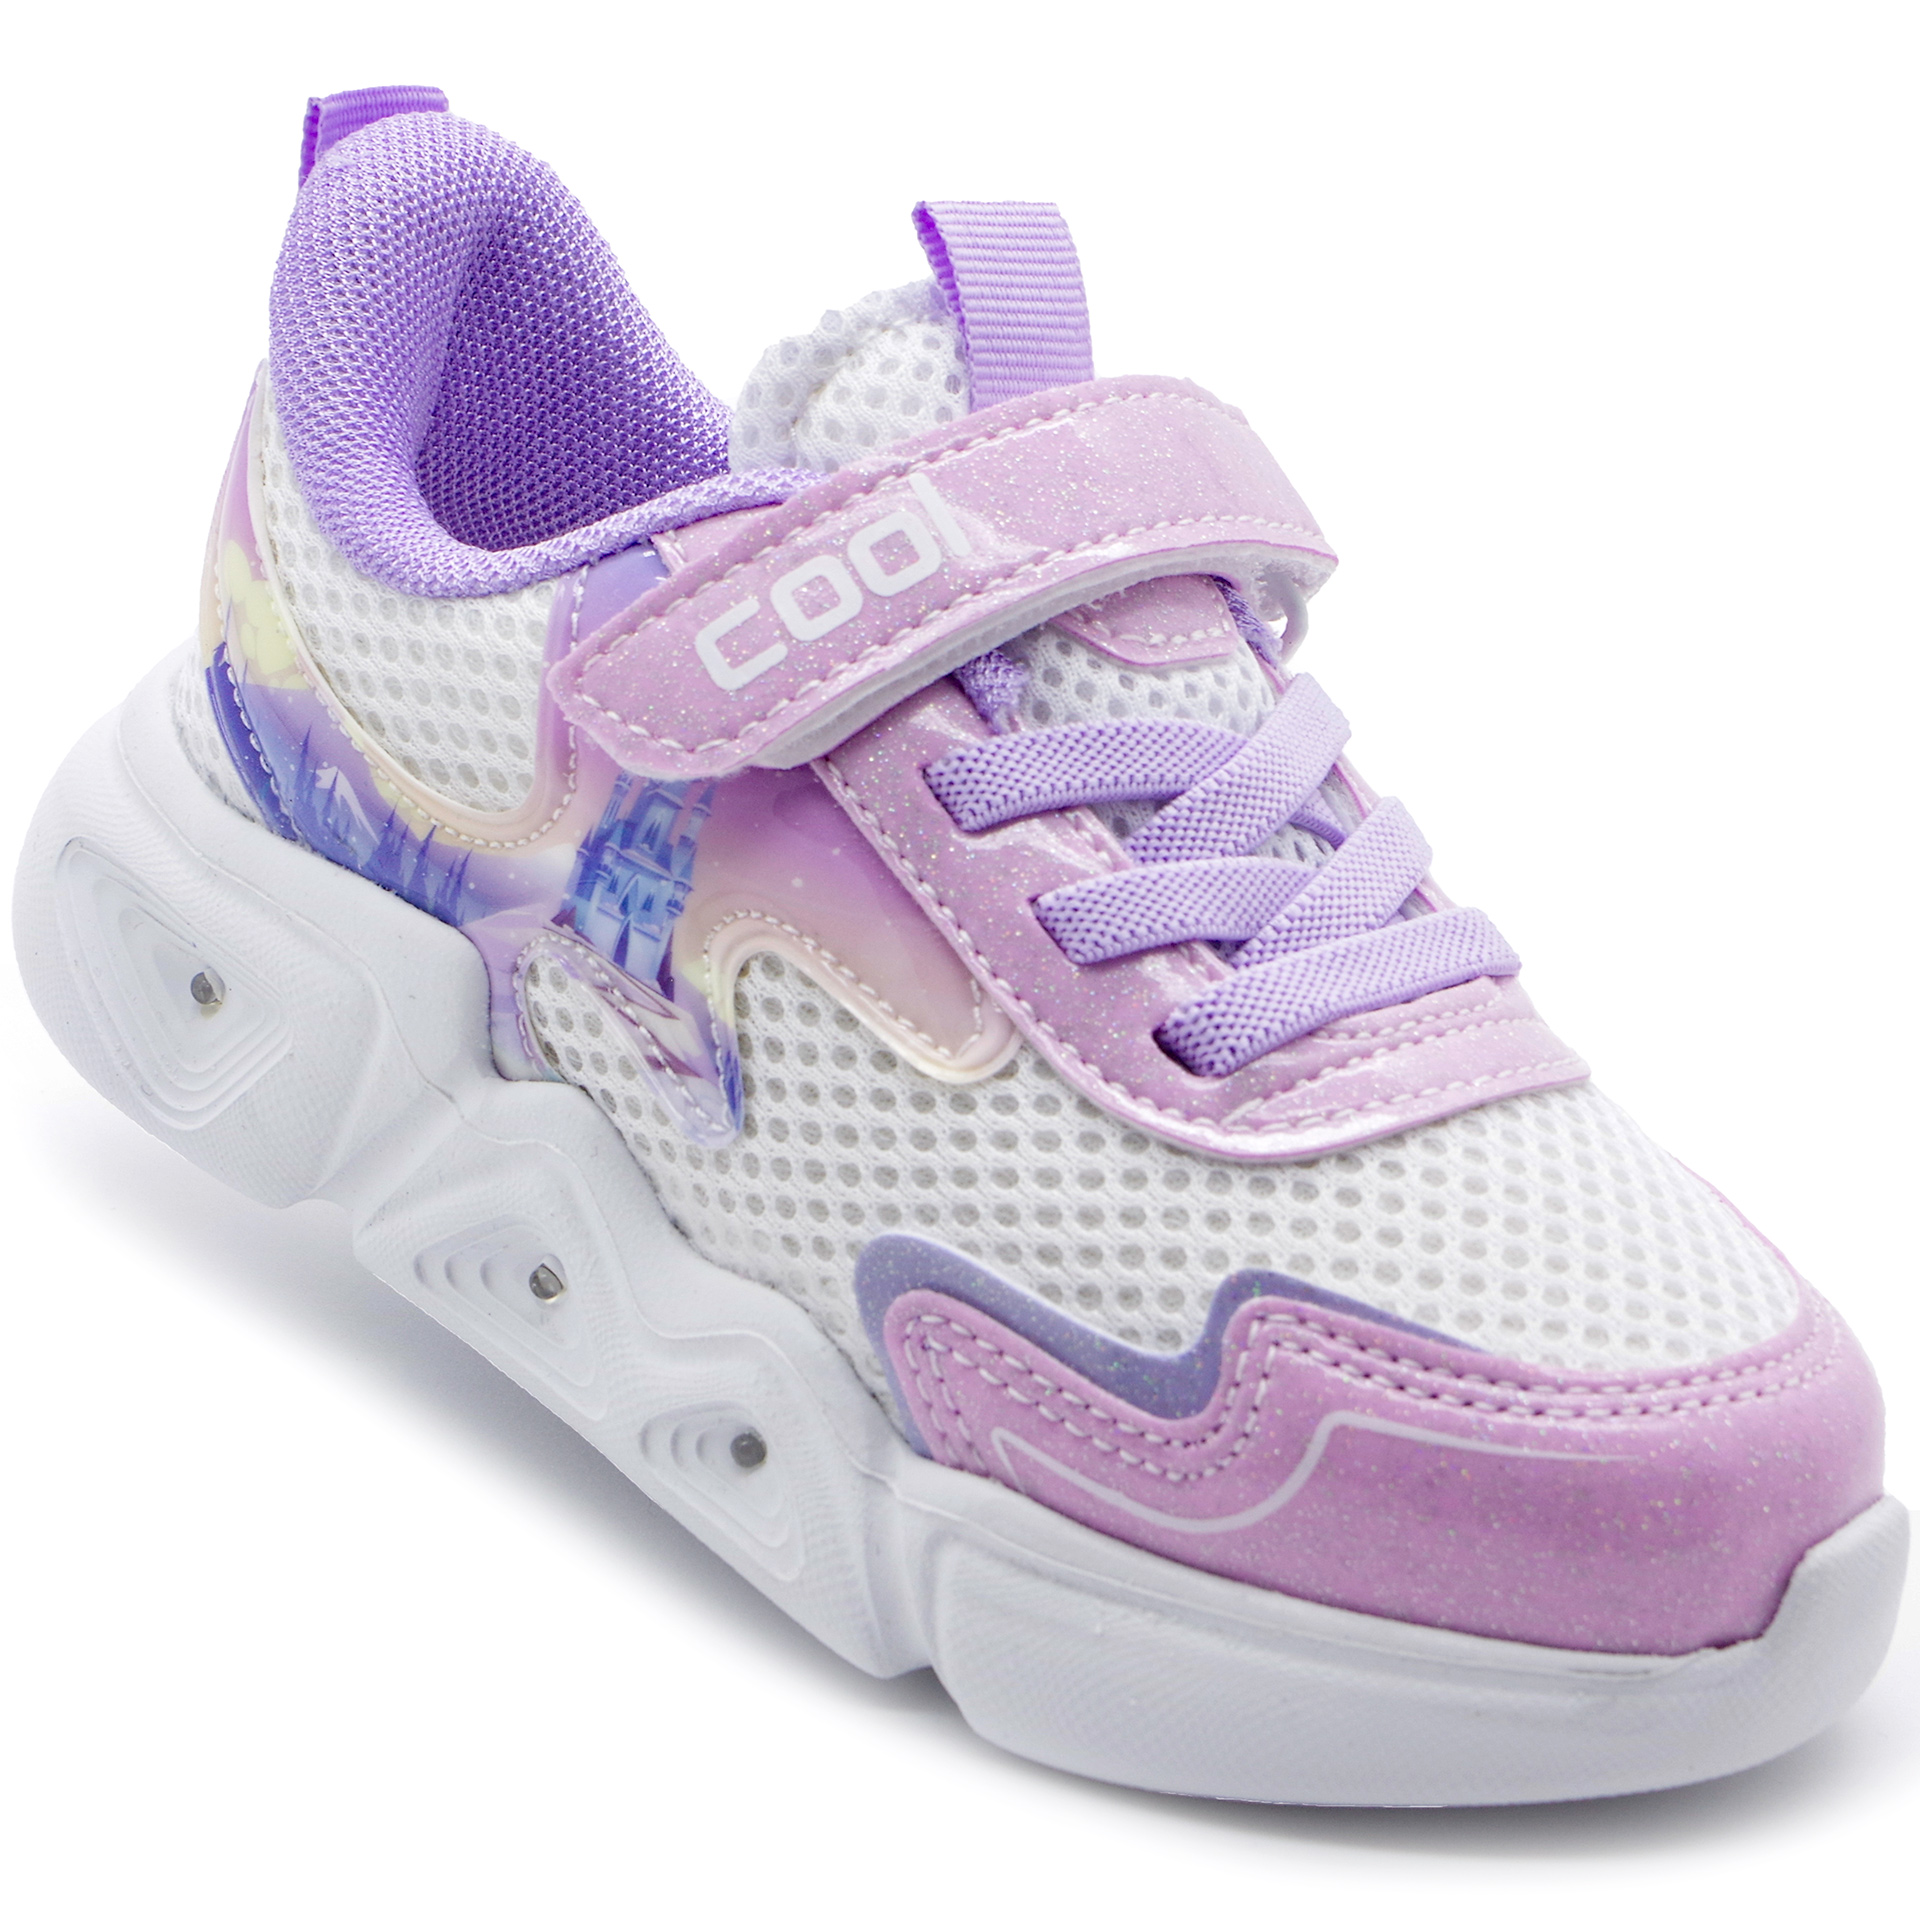 Кросівки для дівчат (2303) для дівчинки, матеріал Текстиль, Фіолетовий колір, 26-30 розміри – Sole Kids